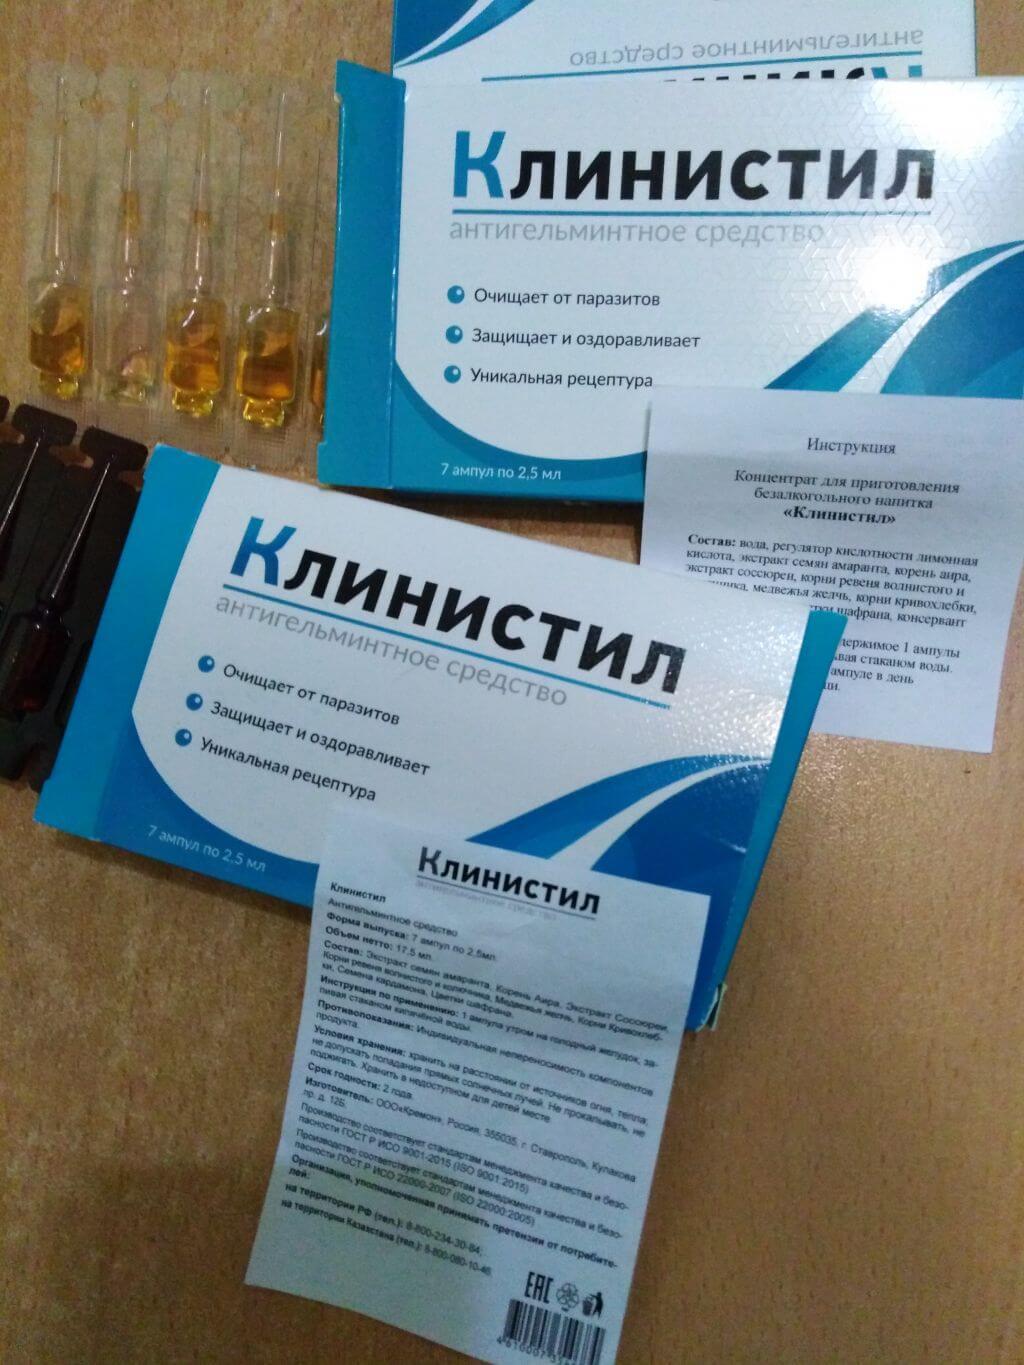 Цена на клинистил в Томске